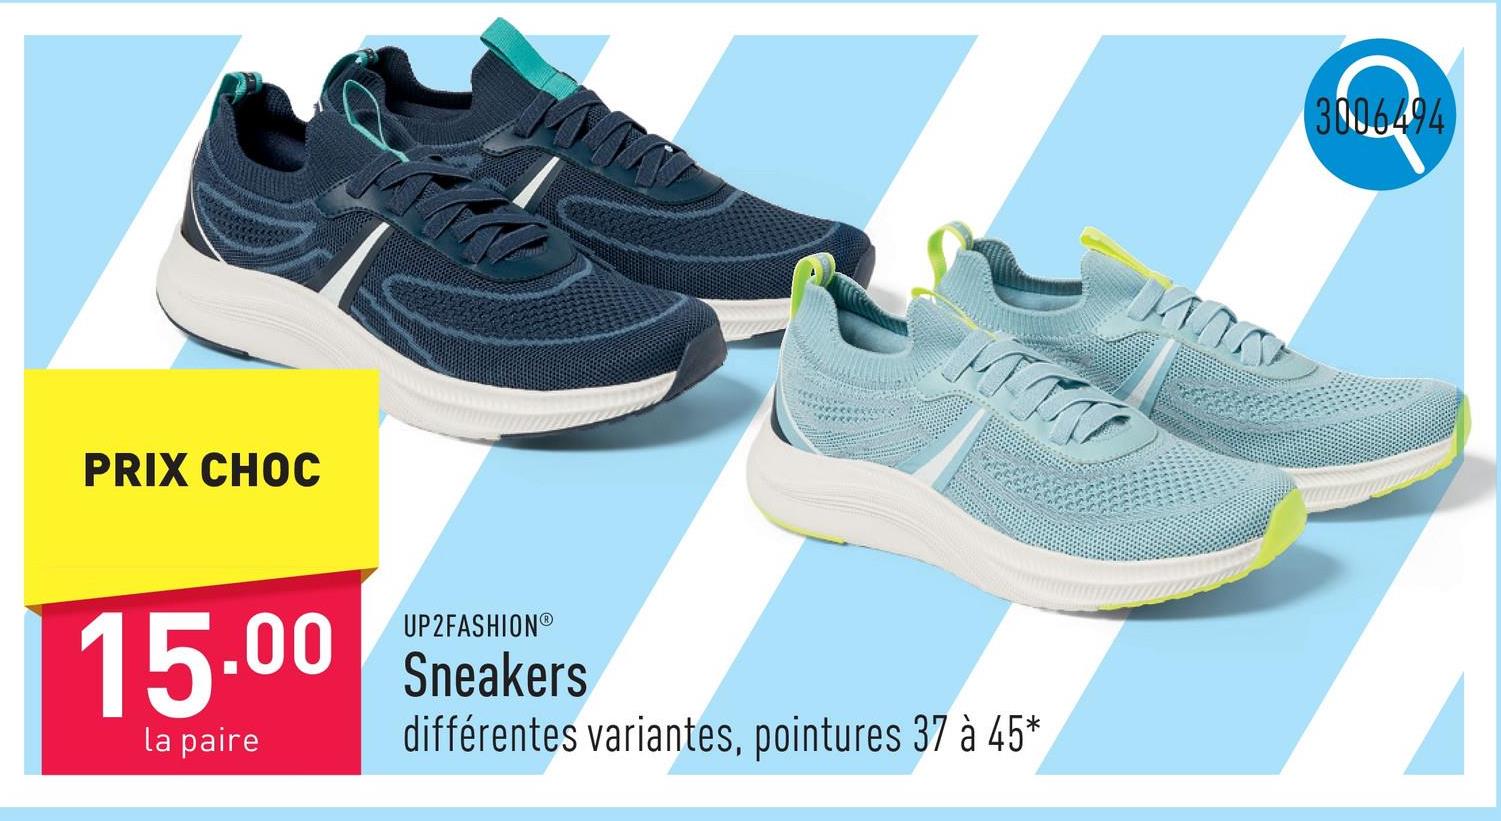 Sneakers choix entre différentes variantes, pointures 37 à 45* *Toutes les variantes ne sont pas disponibles dans toutes les pointures.